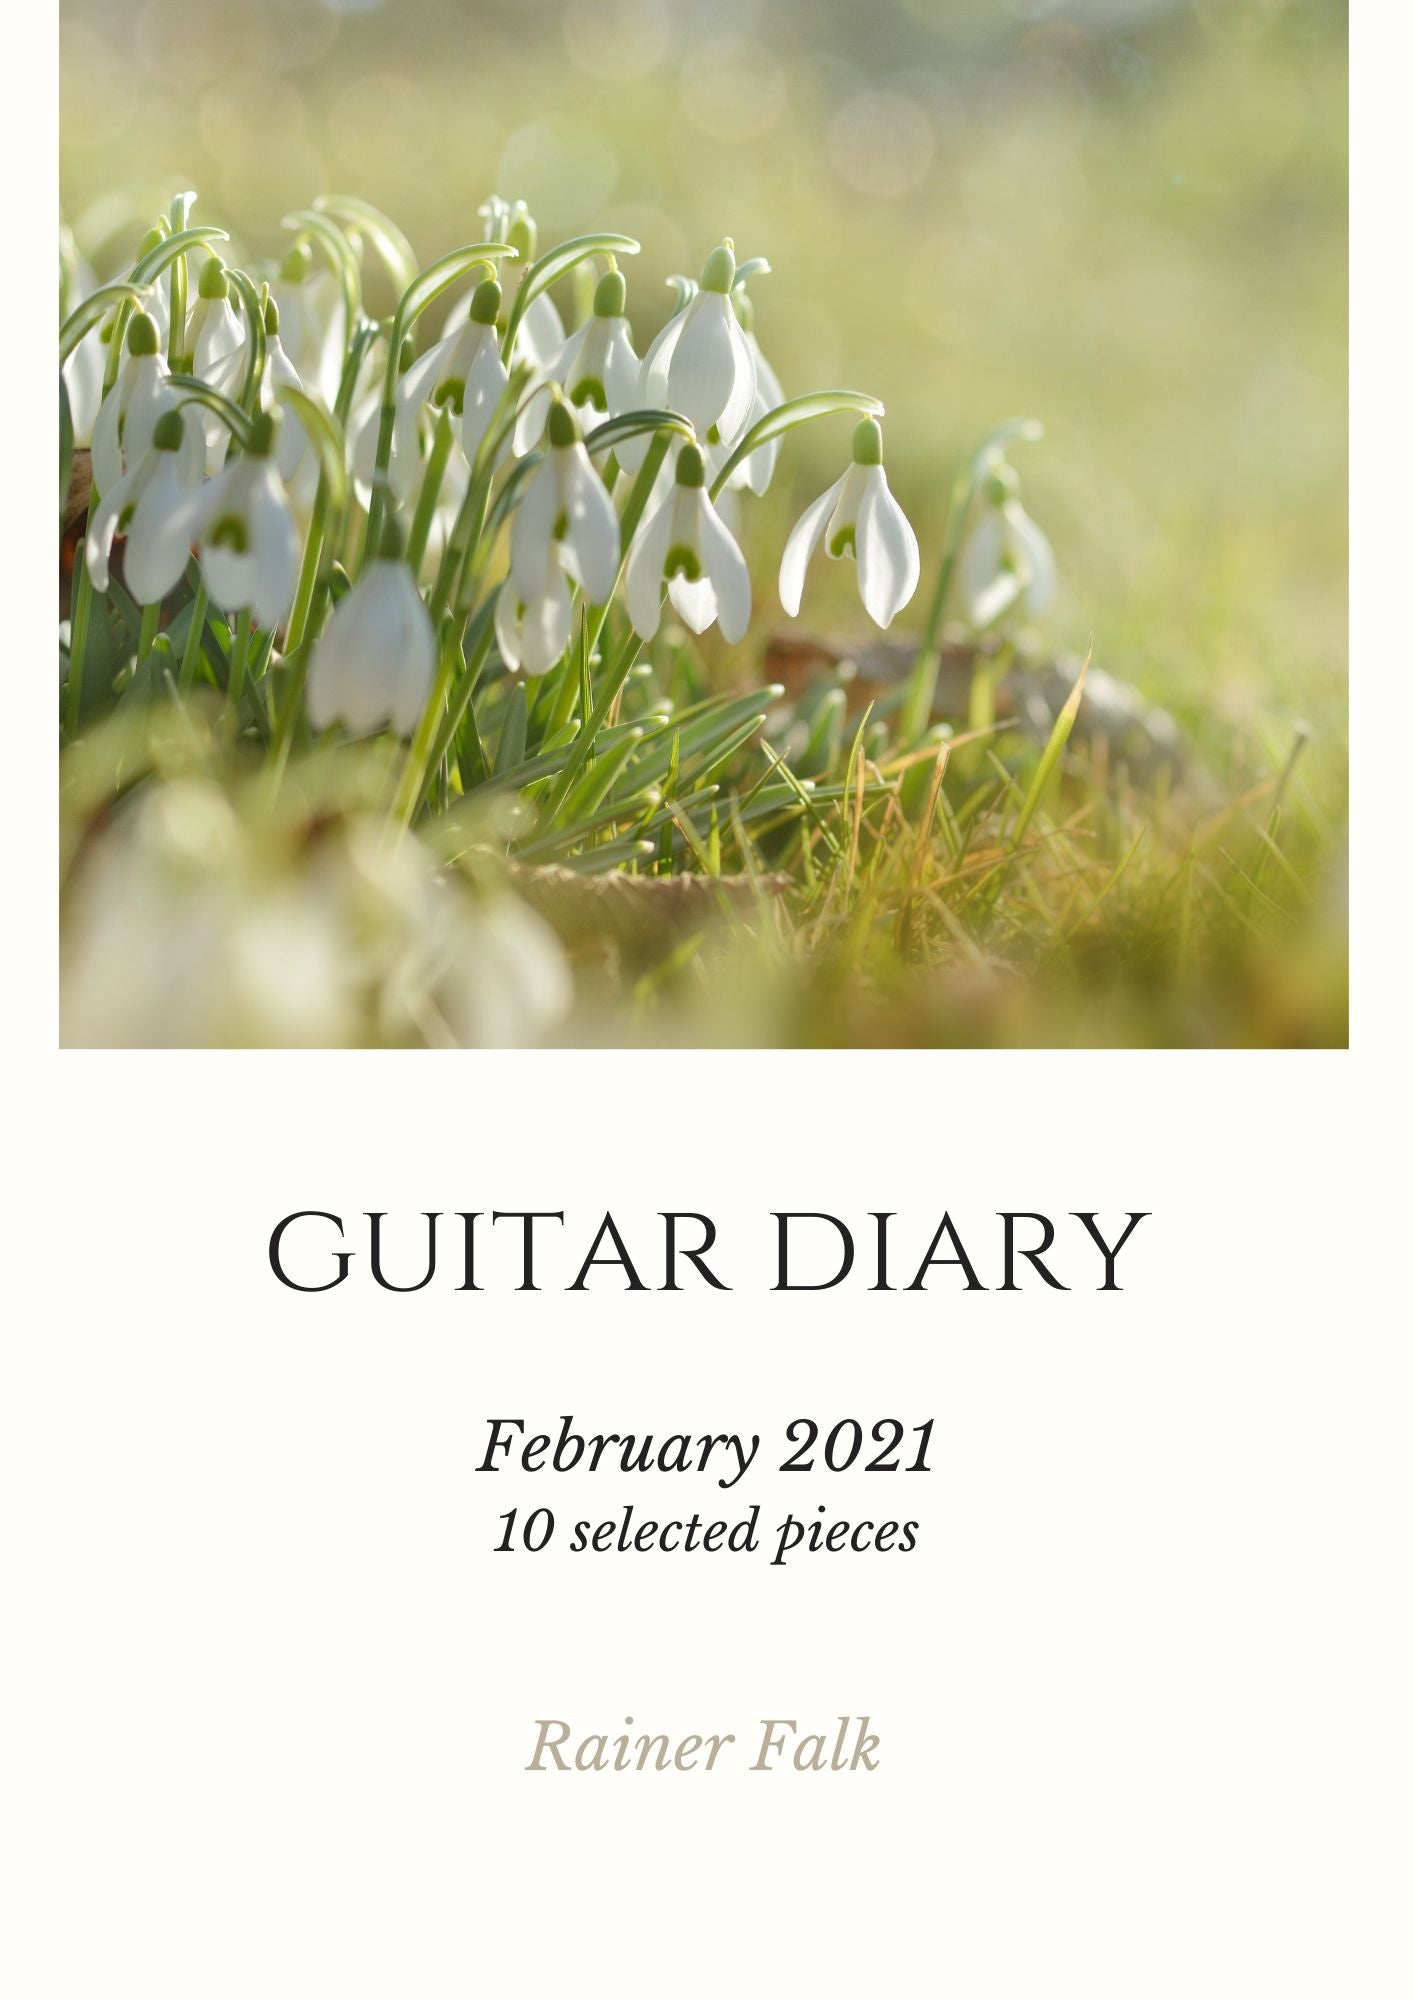 GUITAR DIARY - FEBRUARY 2021